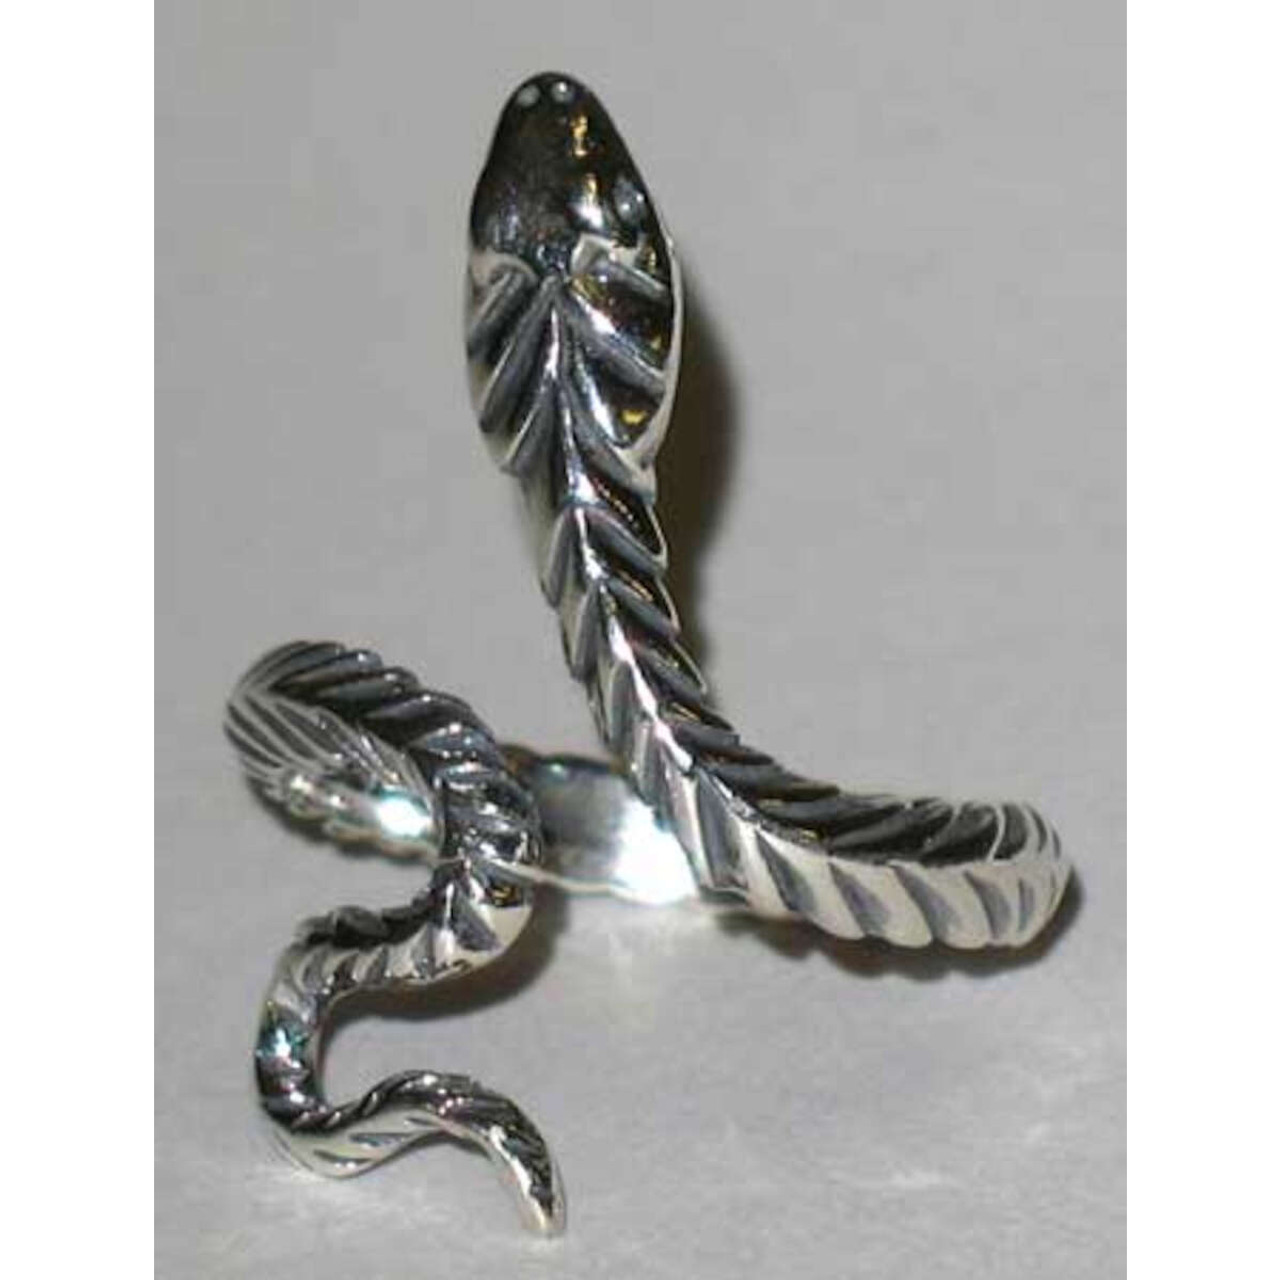 Snake Ring Sterling Silver Adjustable